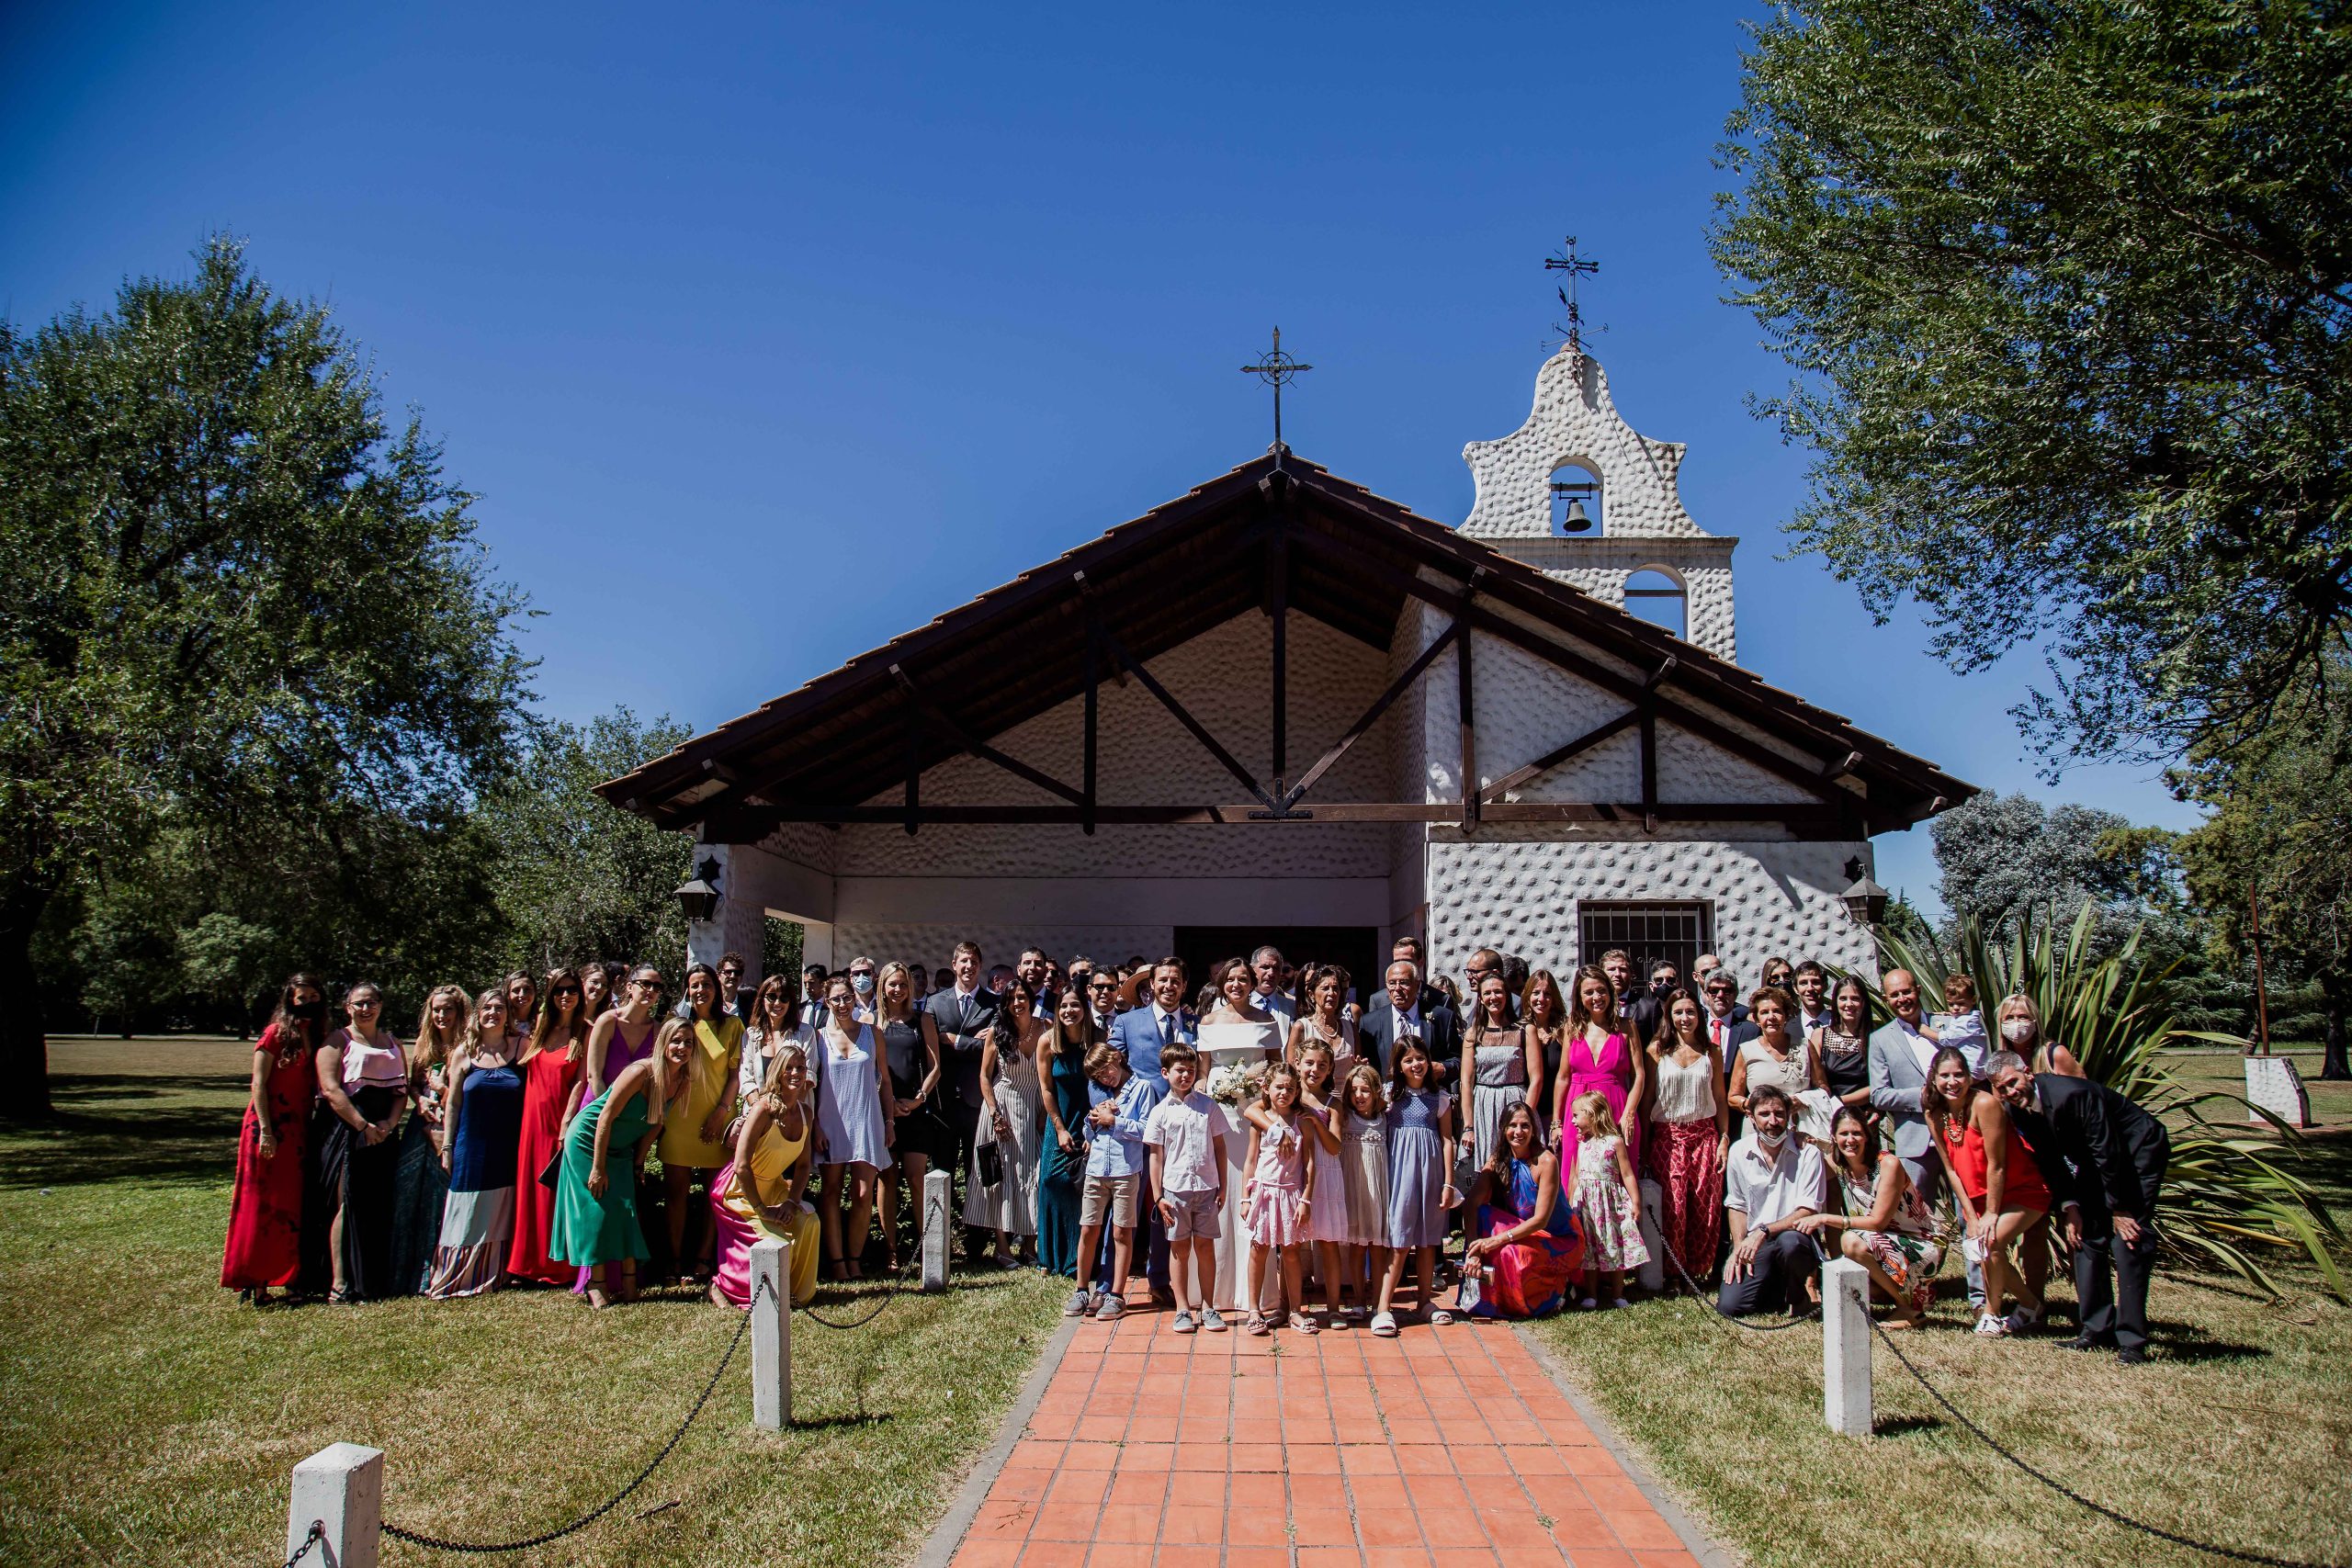 Fotos de la boda de Bren y Pato en Rosario realizadas por Bucle Fotografias Flor Bosio y Caro Clerici